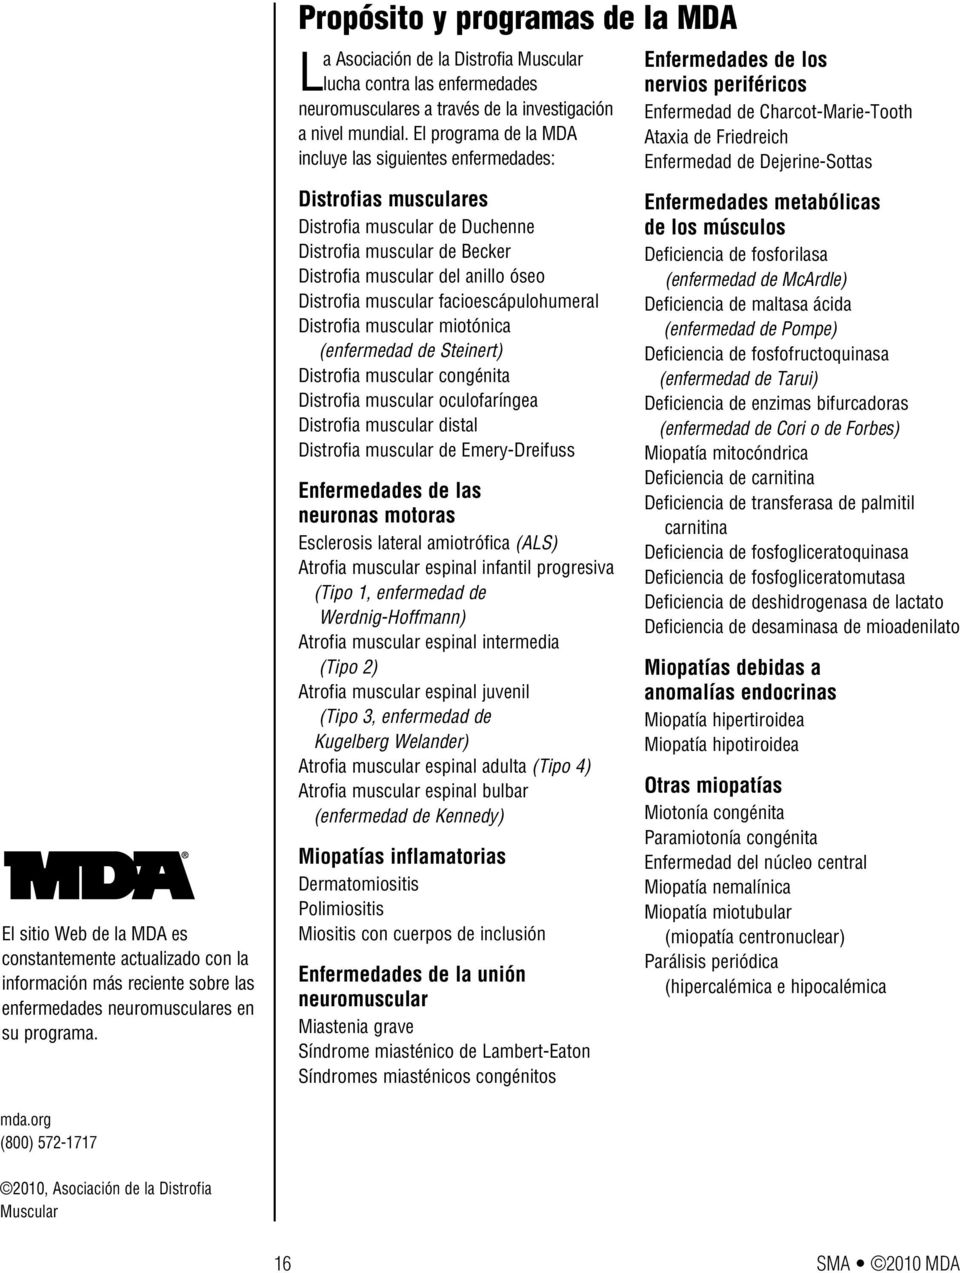 El programa de la MDA incluye las siguientes enfermedades: Distrofias musculares Distrofia muscular de Duchenne Distrofia muscular de Becker Distrofia muscular del anillo óseo Distrofia muscular